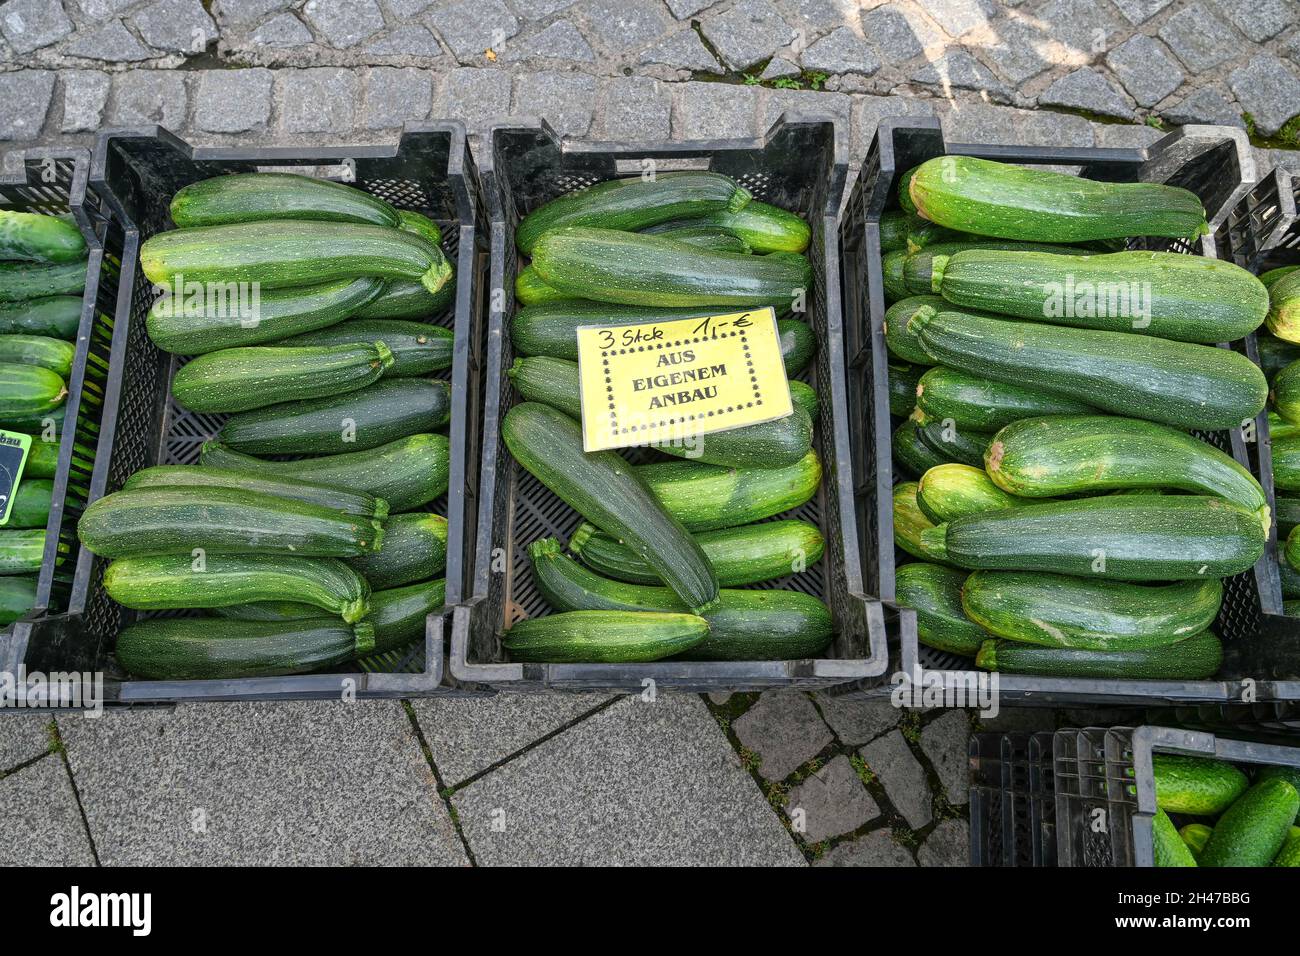 Zucchini, Markt Kisten, Deutschland Stock Photo